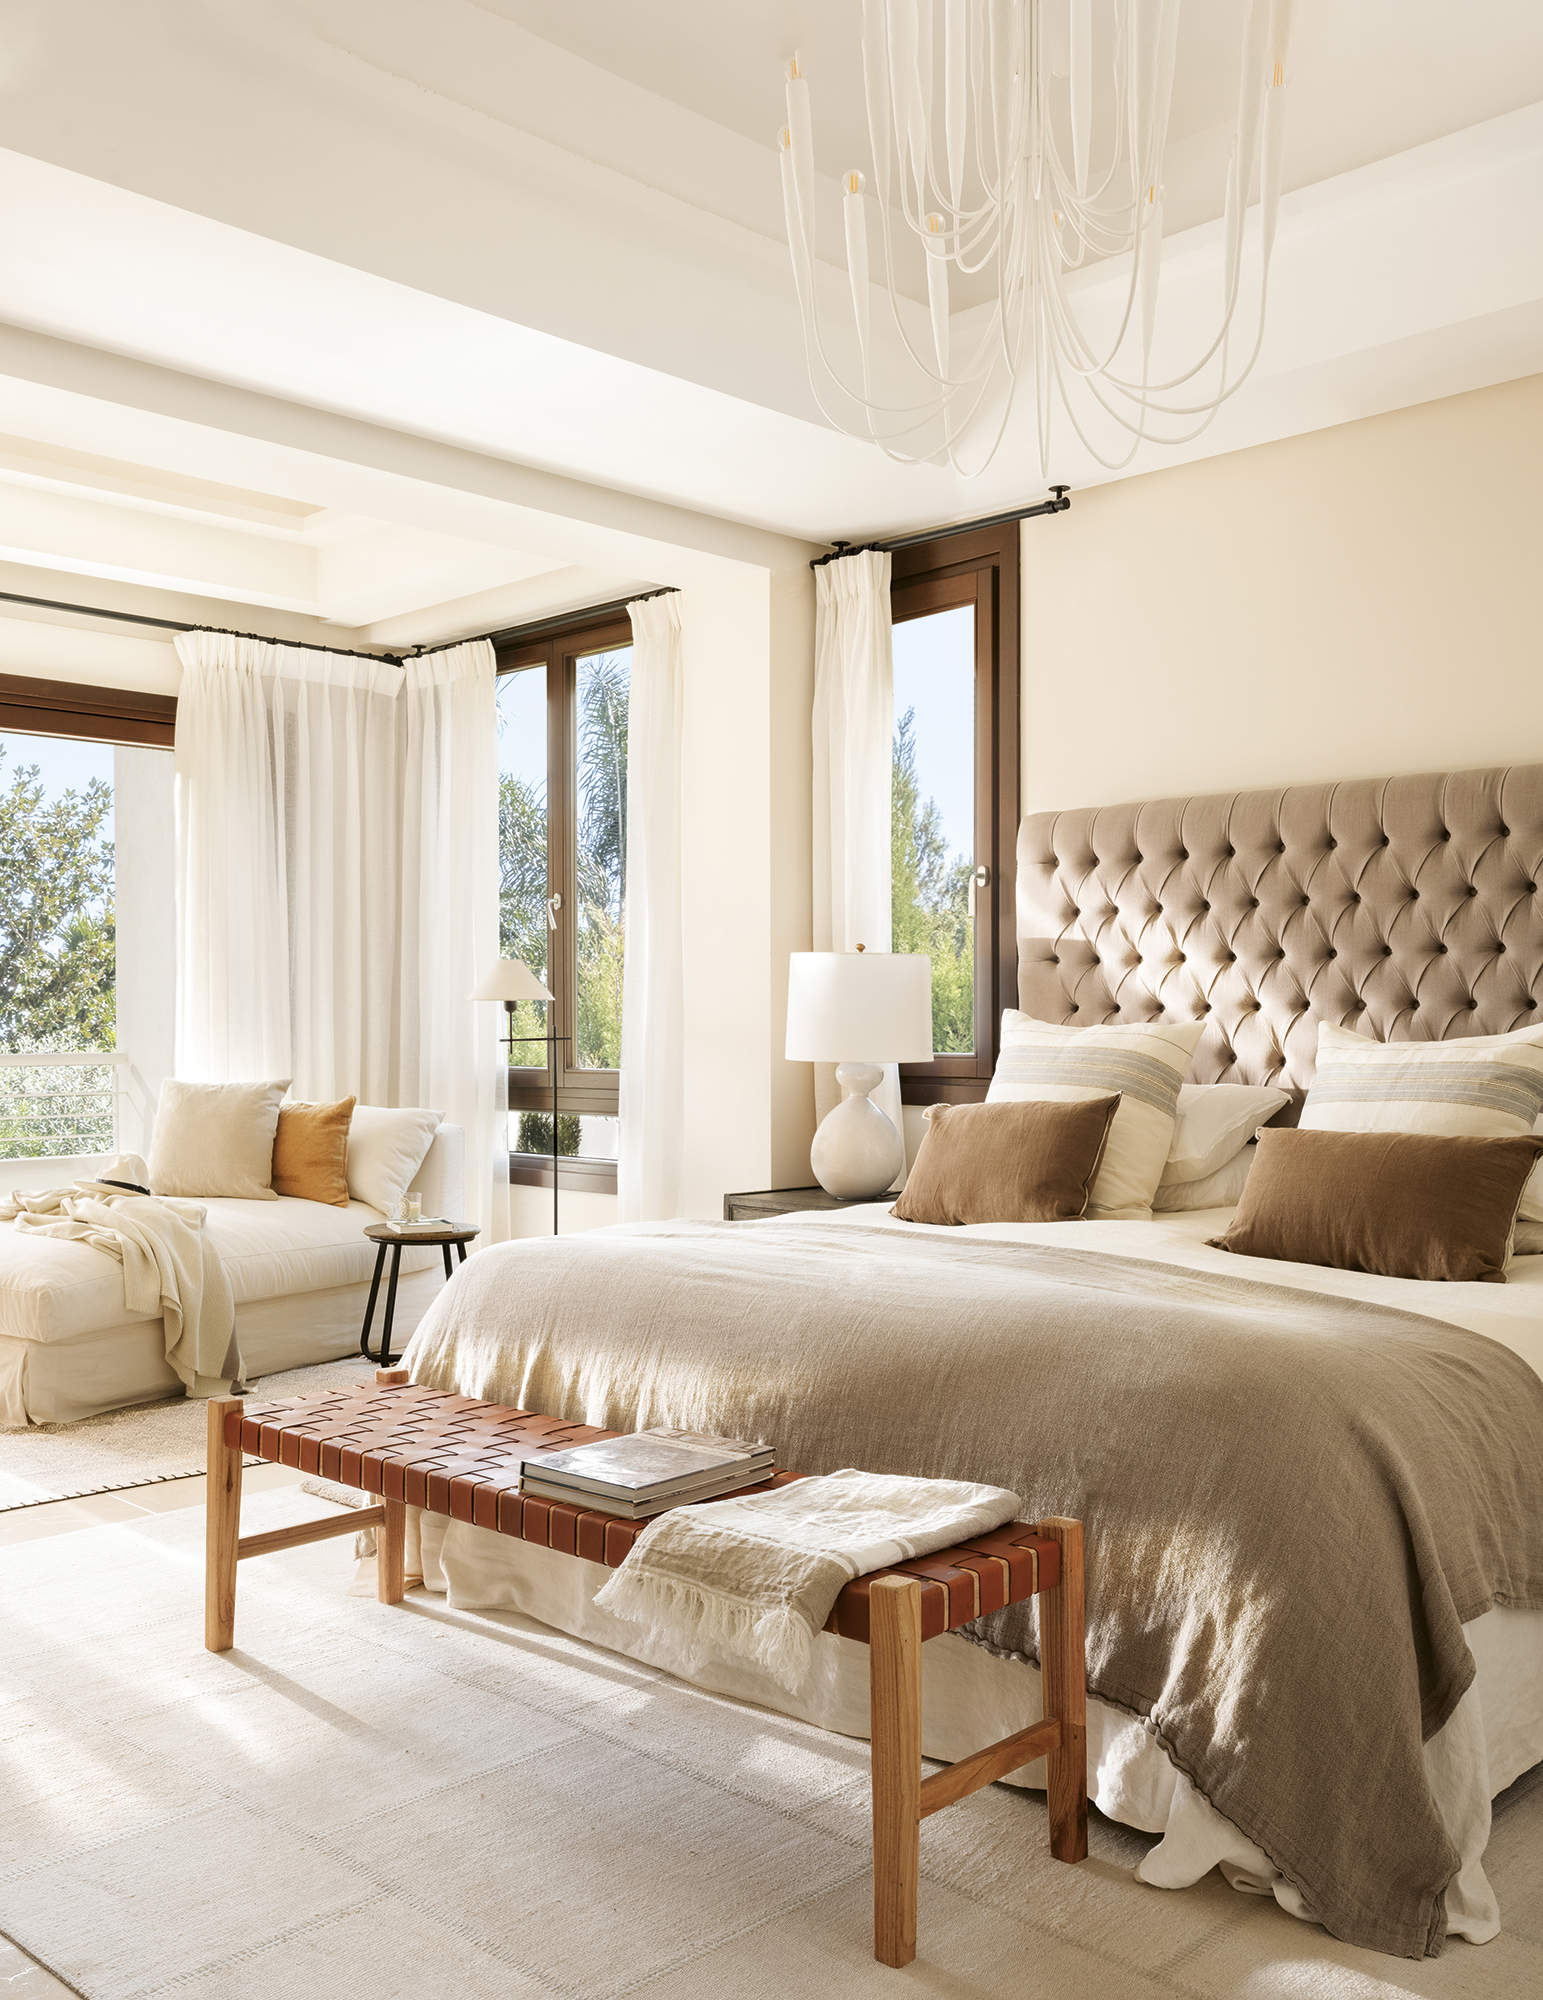 Dormitorio elegante y luminoso en tonos grises y crudos